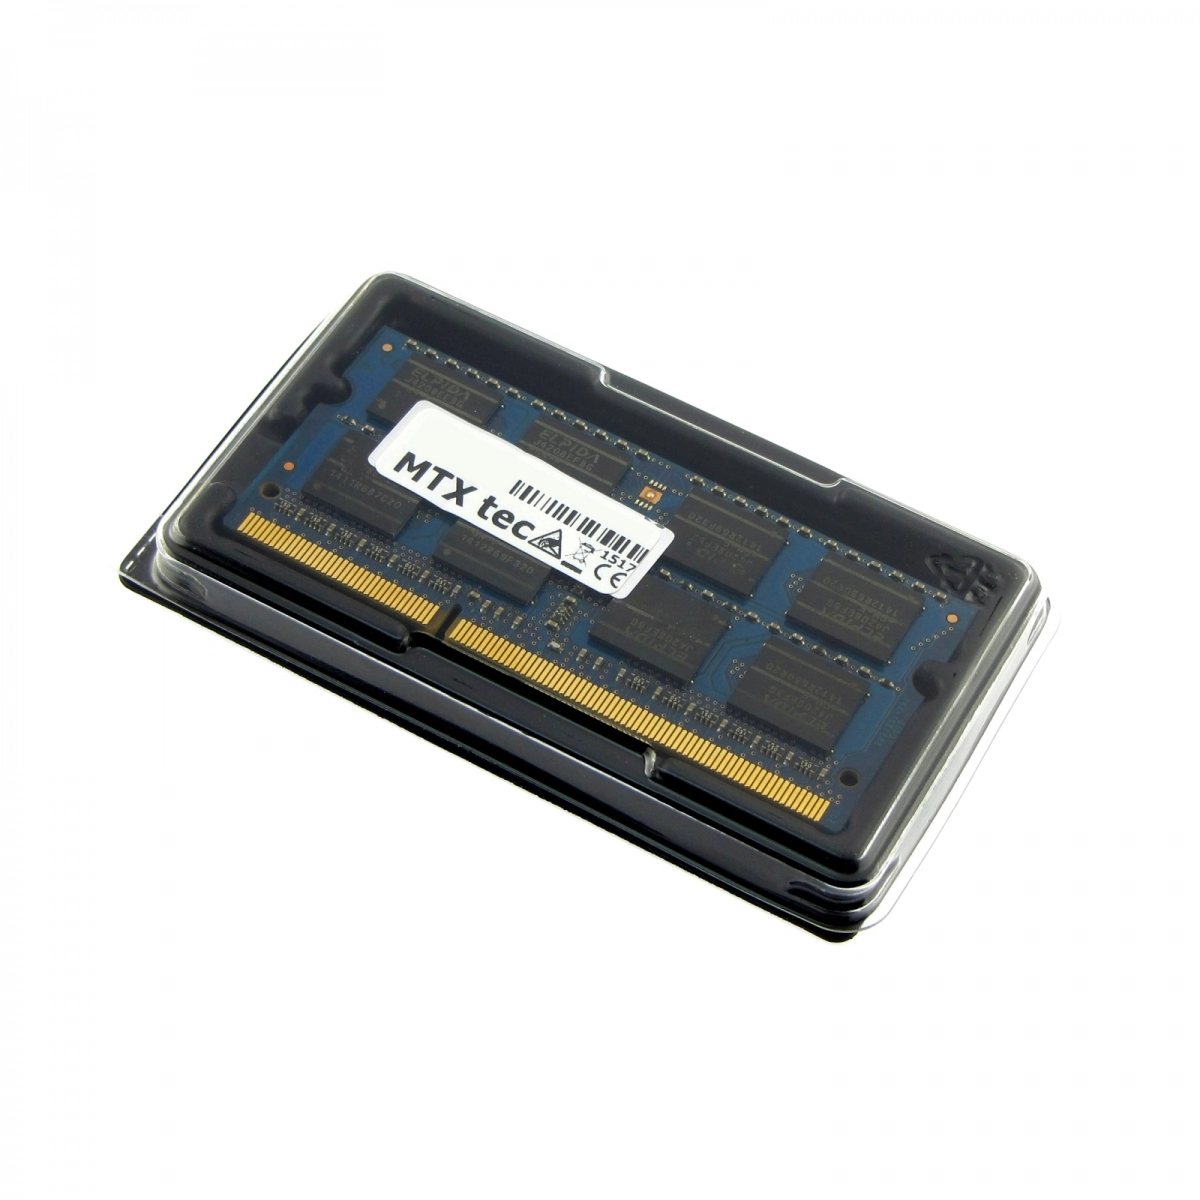 MTXtec Arbeitsspeicher 4 GB RAM für SAMSUNG R730 JT08